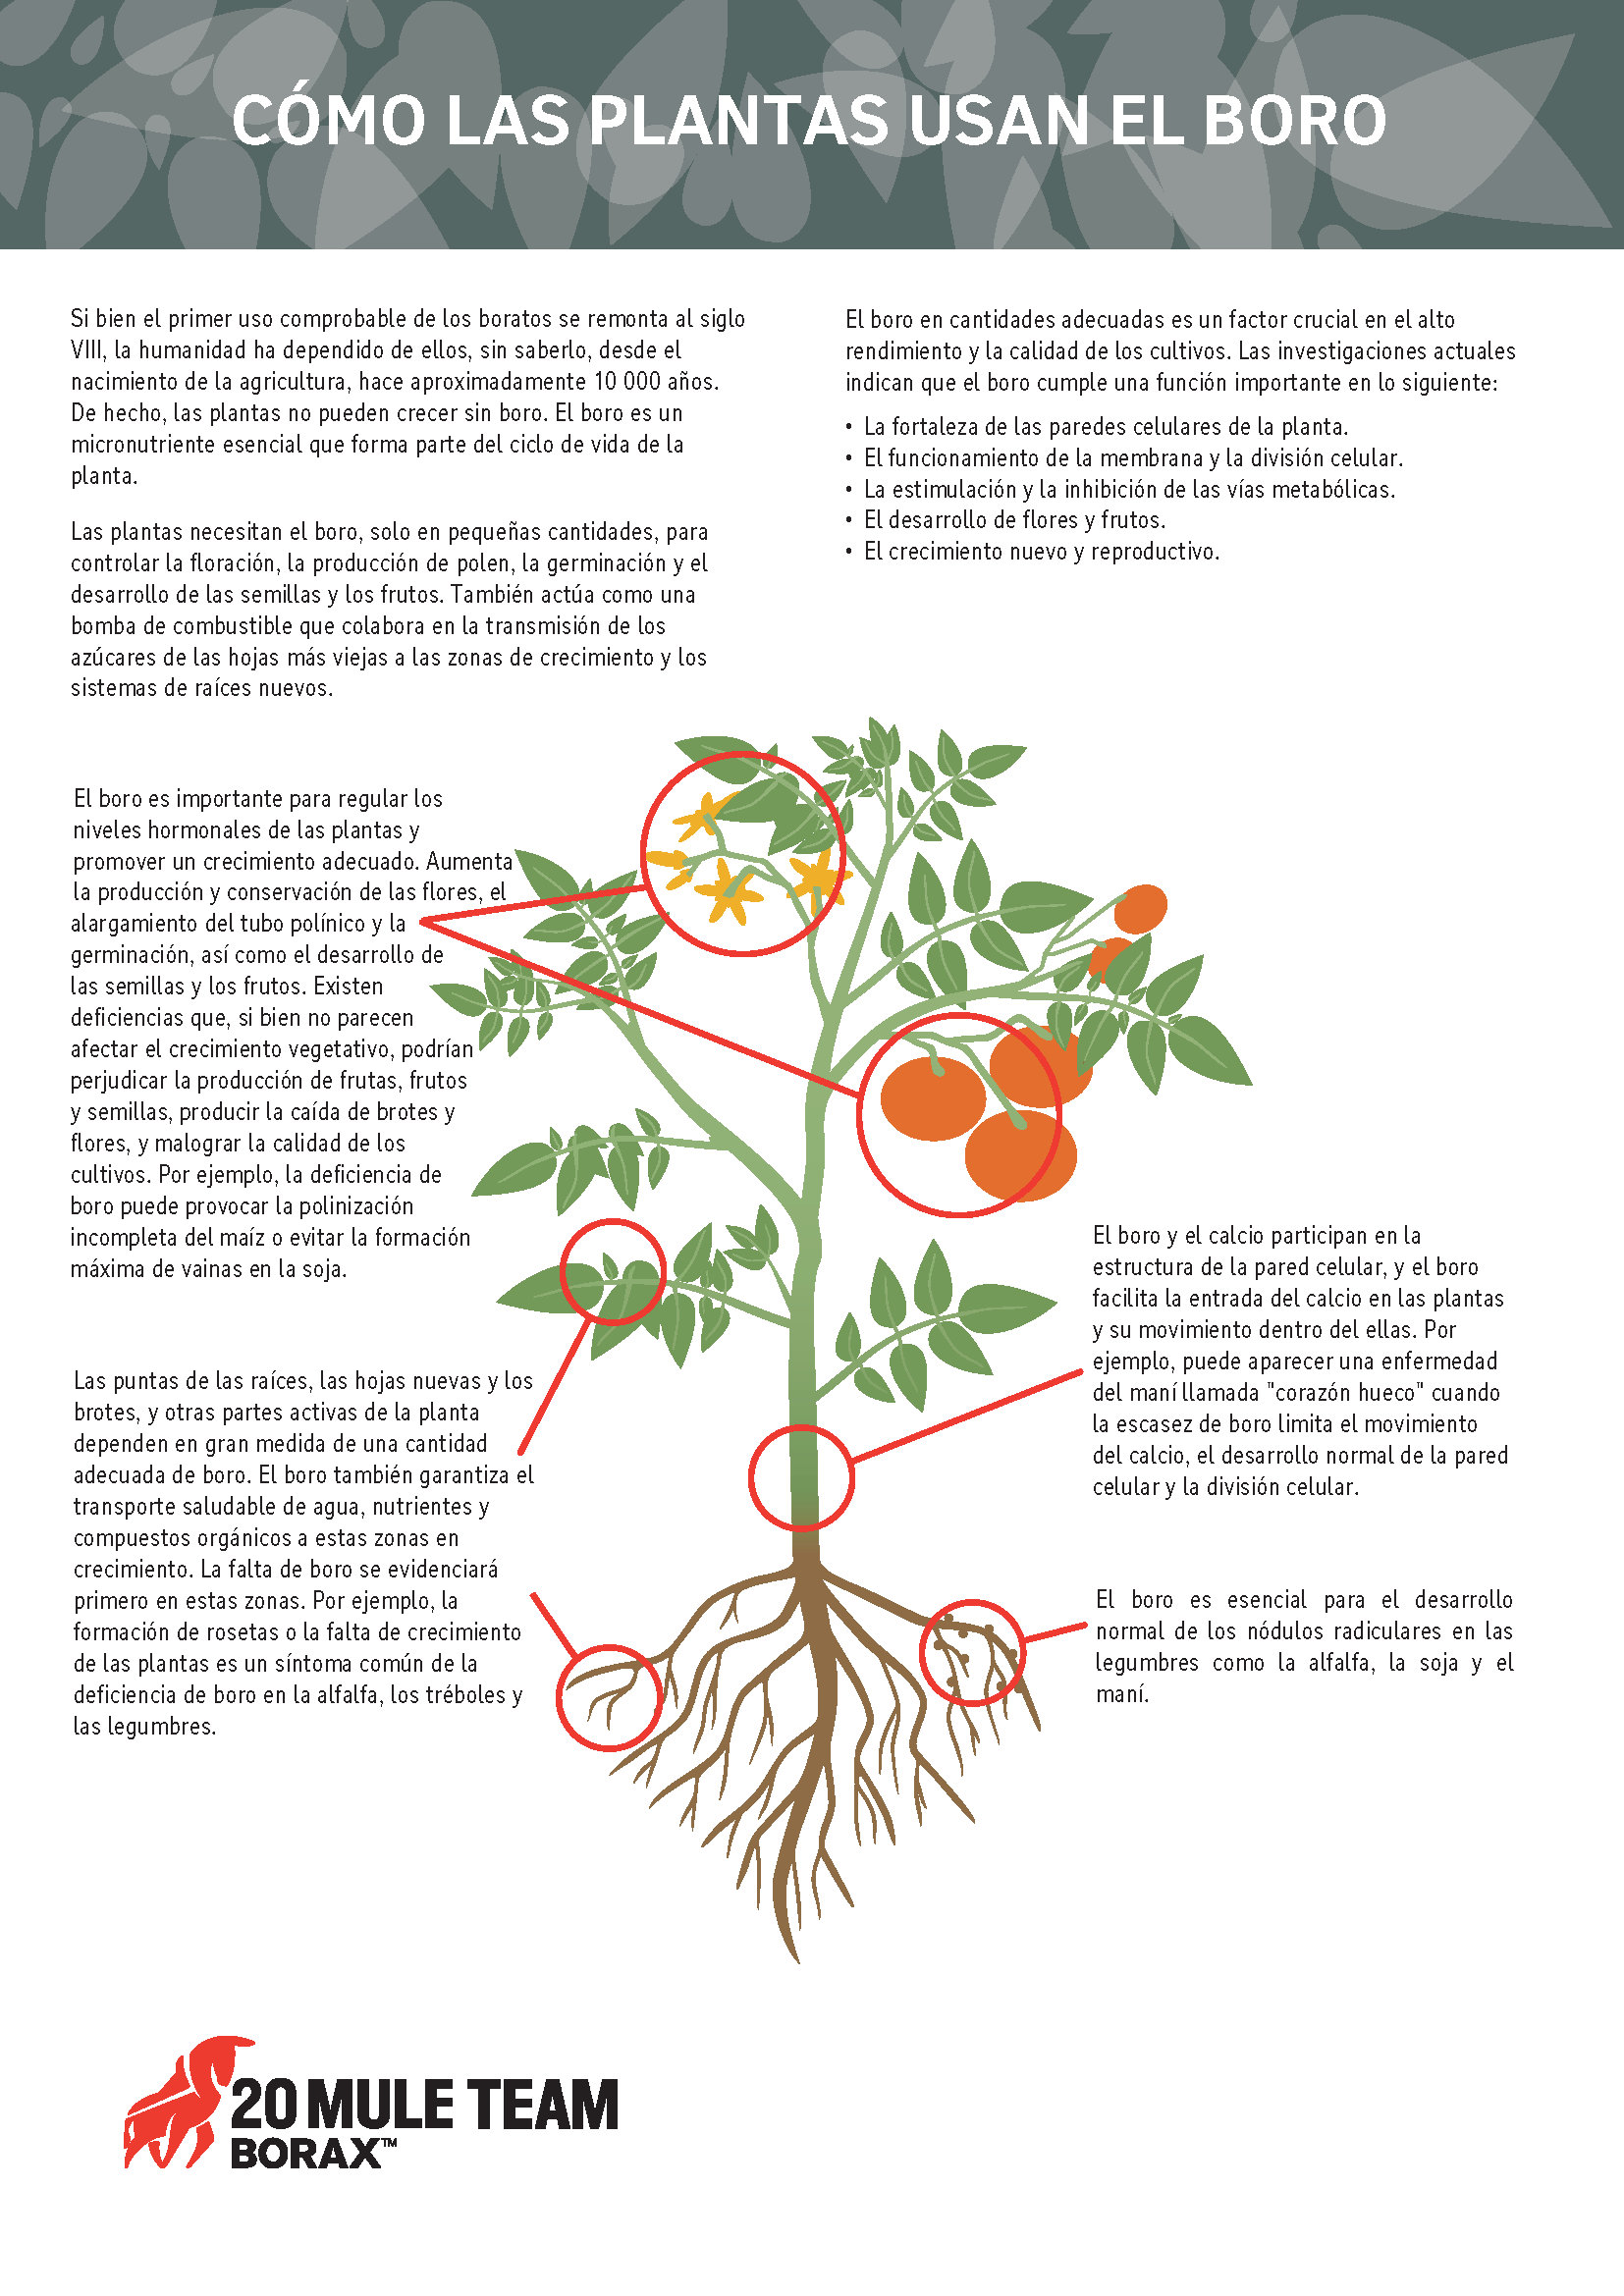 Un diagrama de cómo las plantas usan el boro